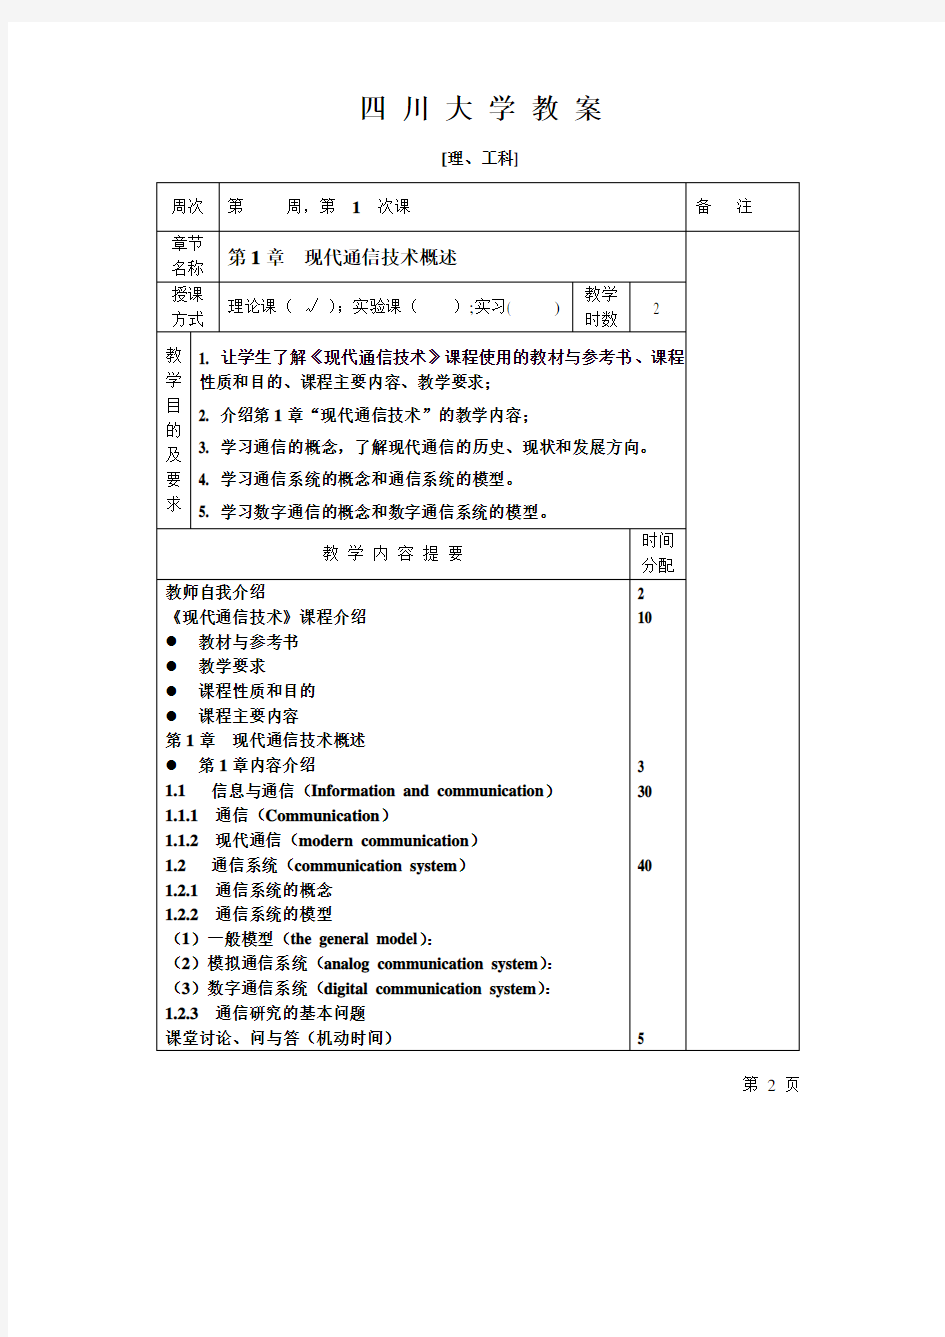 现代通信技术教案四川大学.pdf